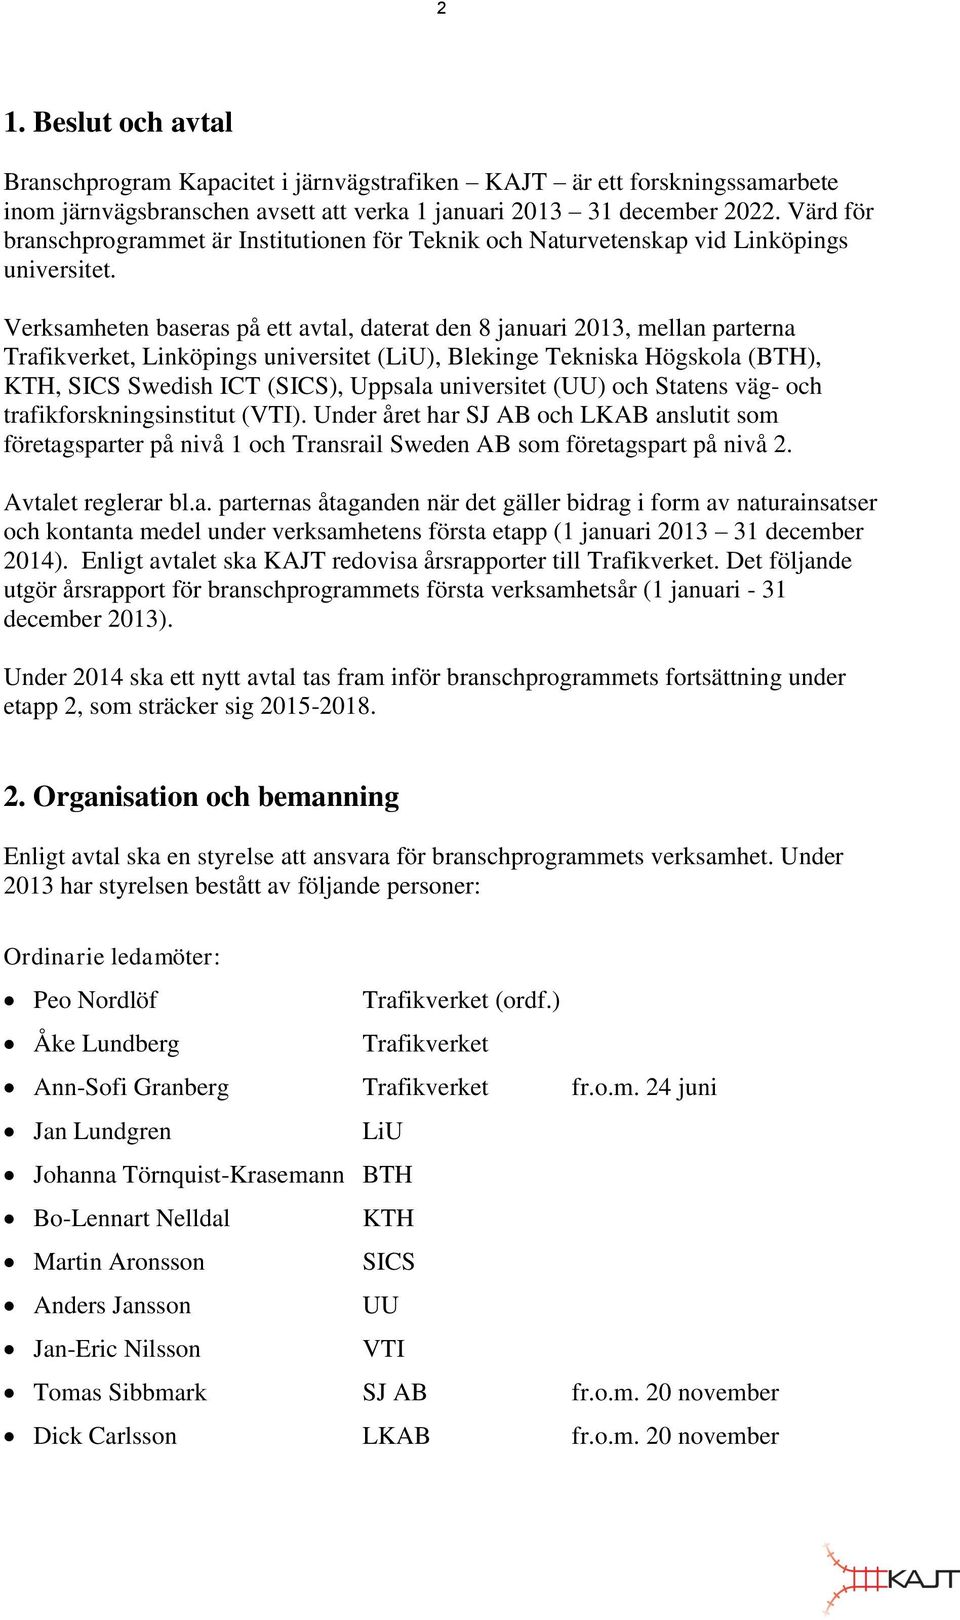 Verksamheten baseras på ett avtal, daterat den 8 januari 2013, mellan parterna Trafikverket, Linköpings universitet (LiU), Blekinge Tekniska Högskola (BTH), KTH, SICS Swedish ICT (SICS), Uppsala